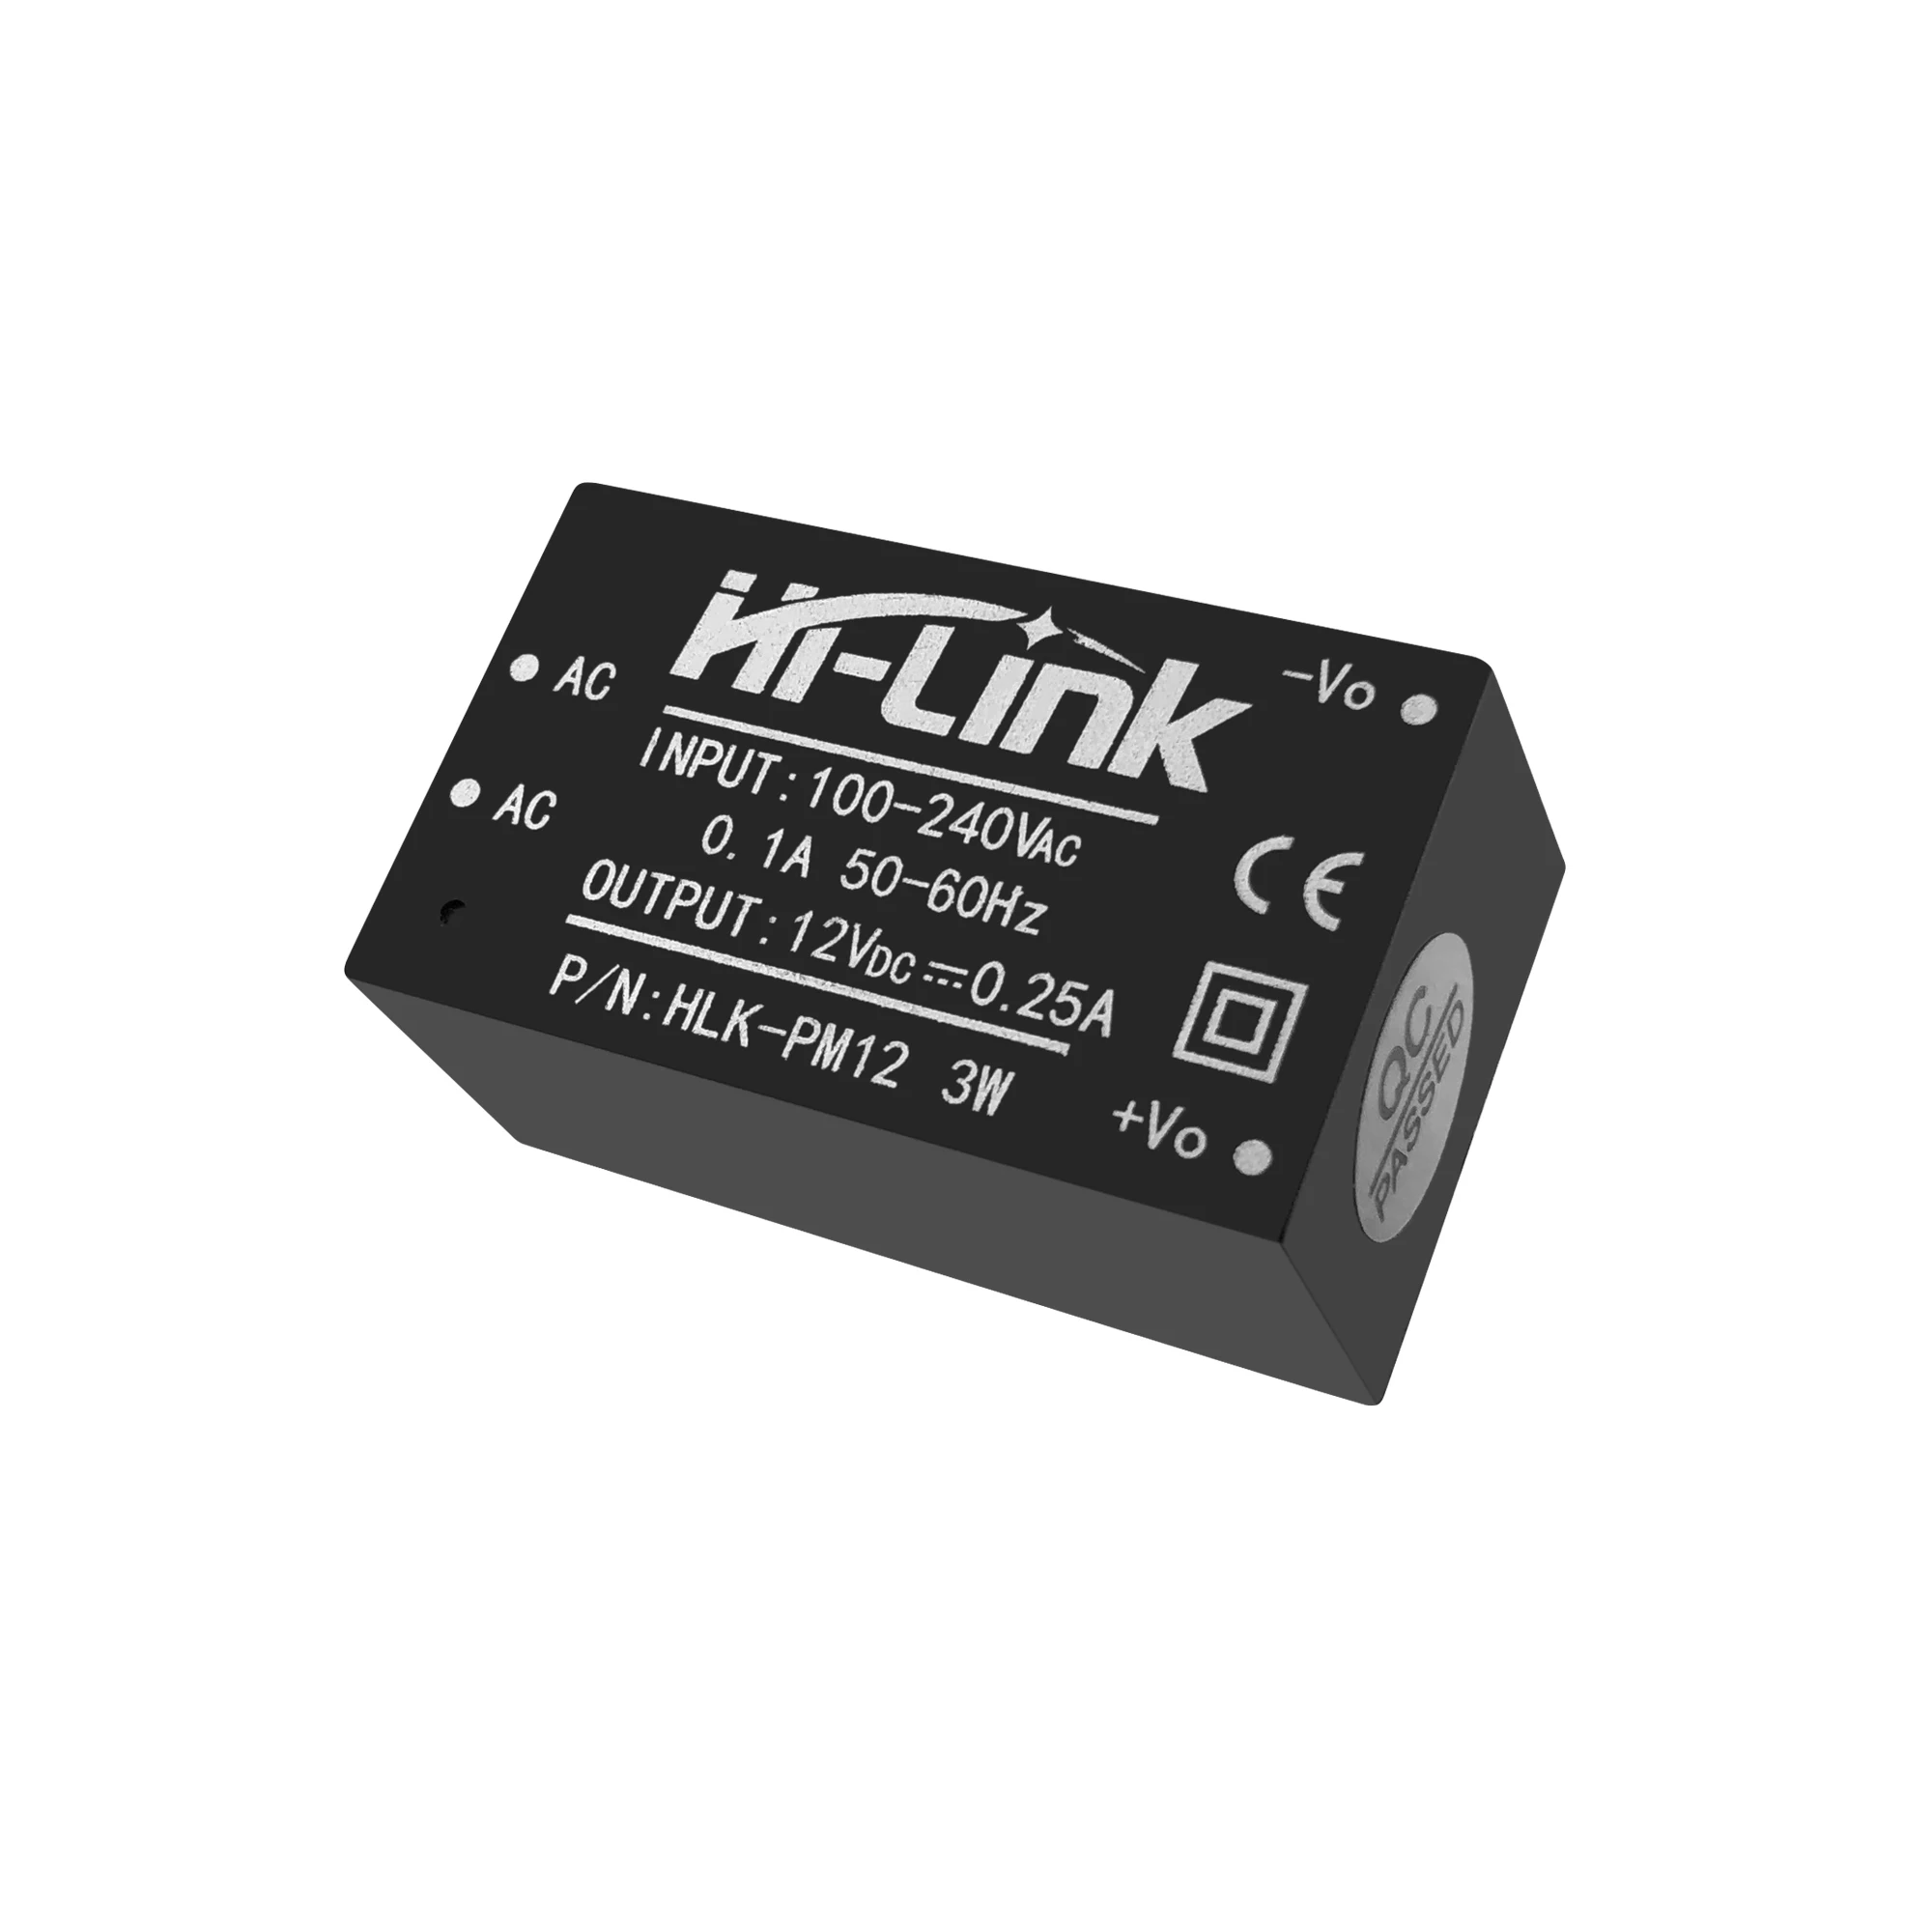 Hi-link HLK-PM12 AC-DC 220V to 12V 3W Buck Step Down Power Supply Module Convert 